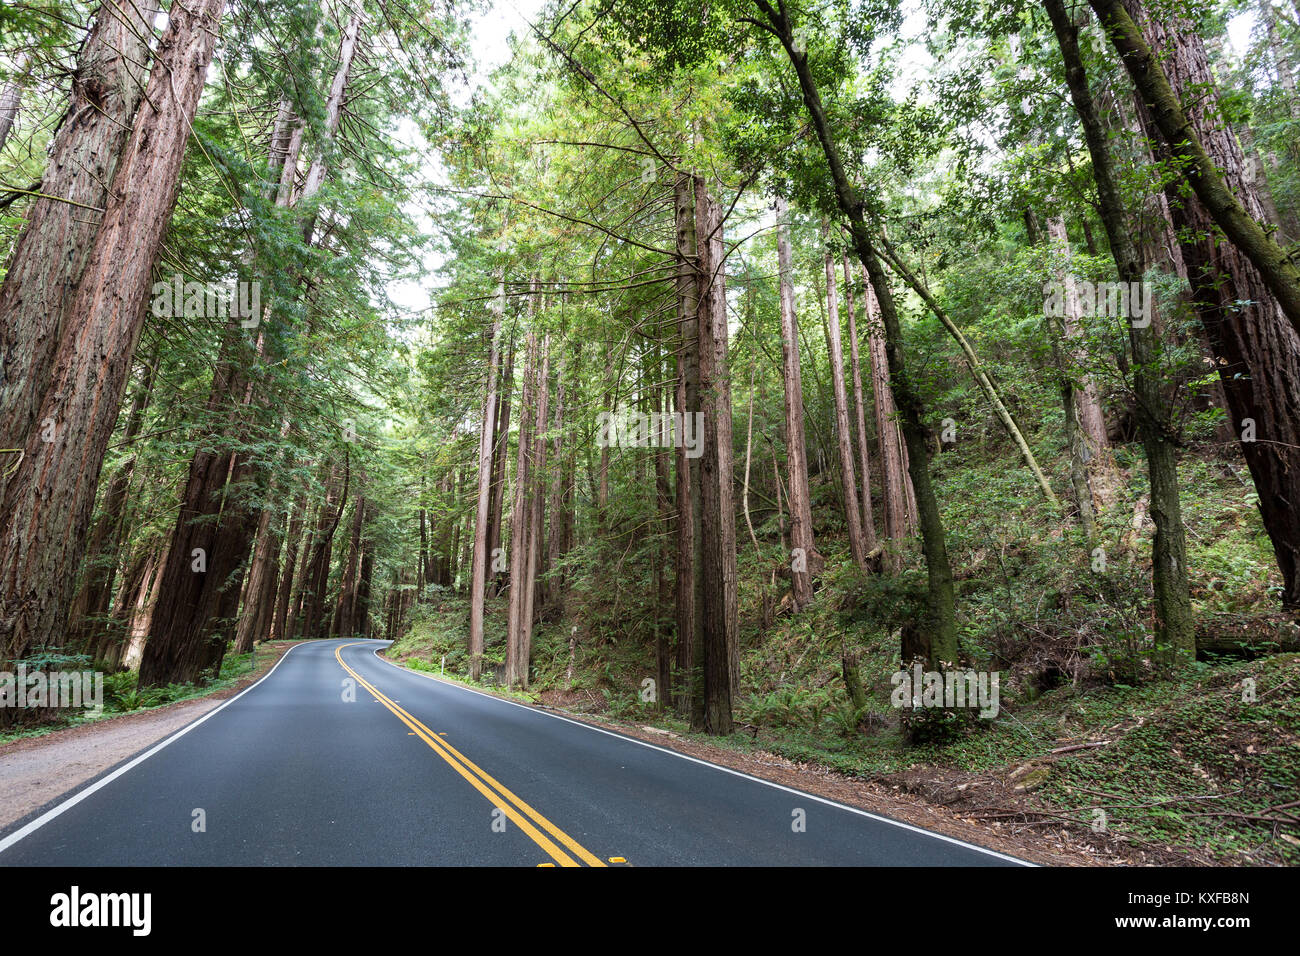 La ruta estatal 128 serpentea a través de los altos árboles, incluidos los árboles Redwood, en el condado de Mendocino, California. Foto de stock